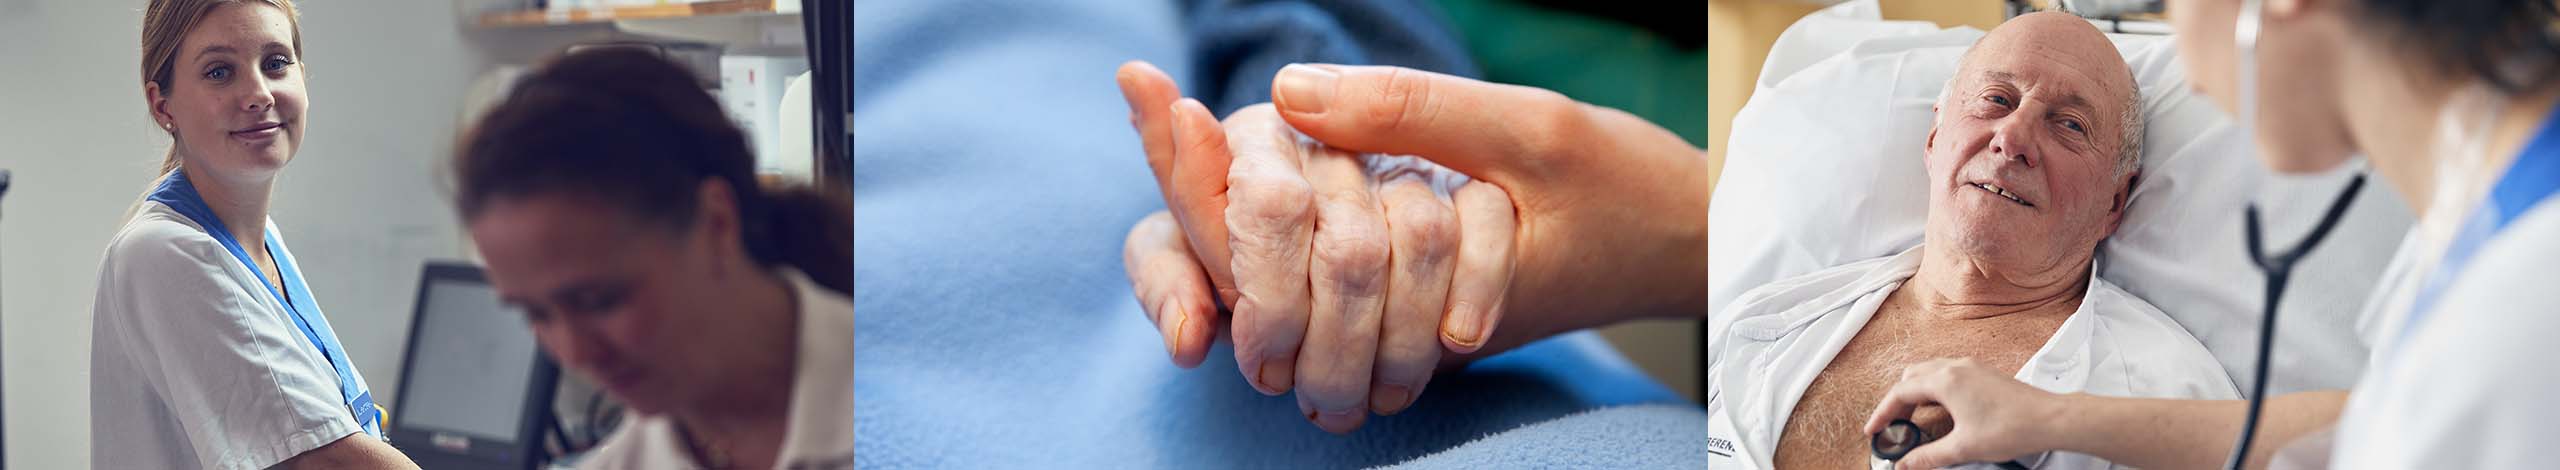 Palliativa konsultteamet - för dig som vårdgivare